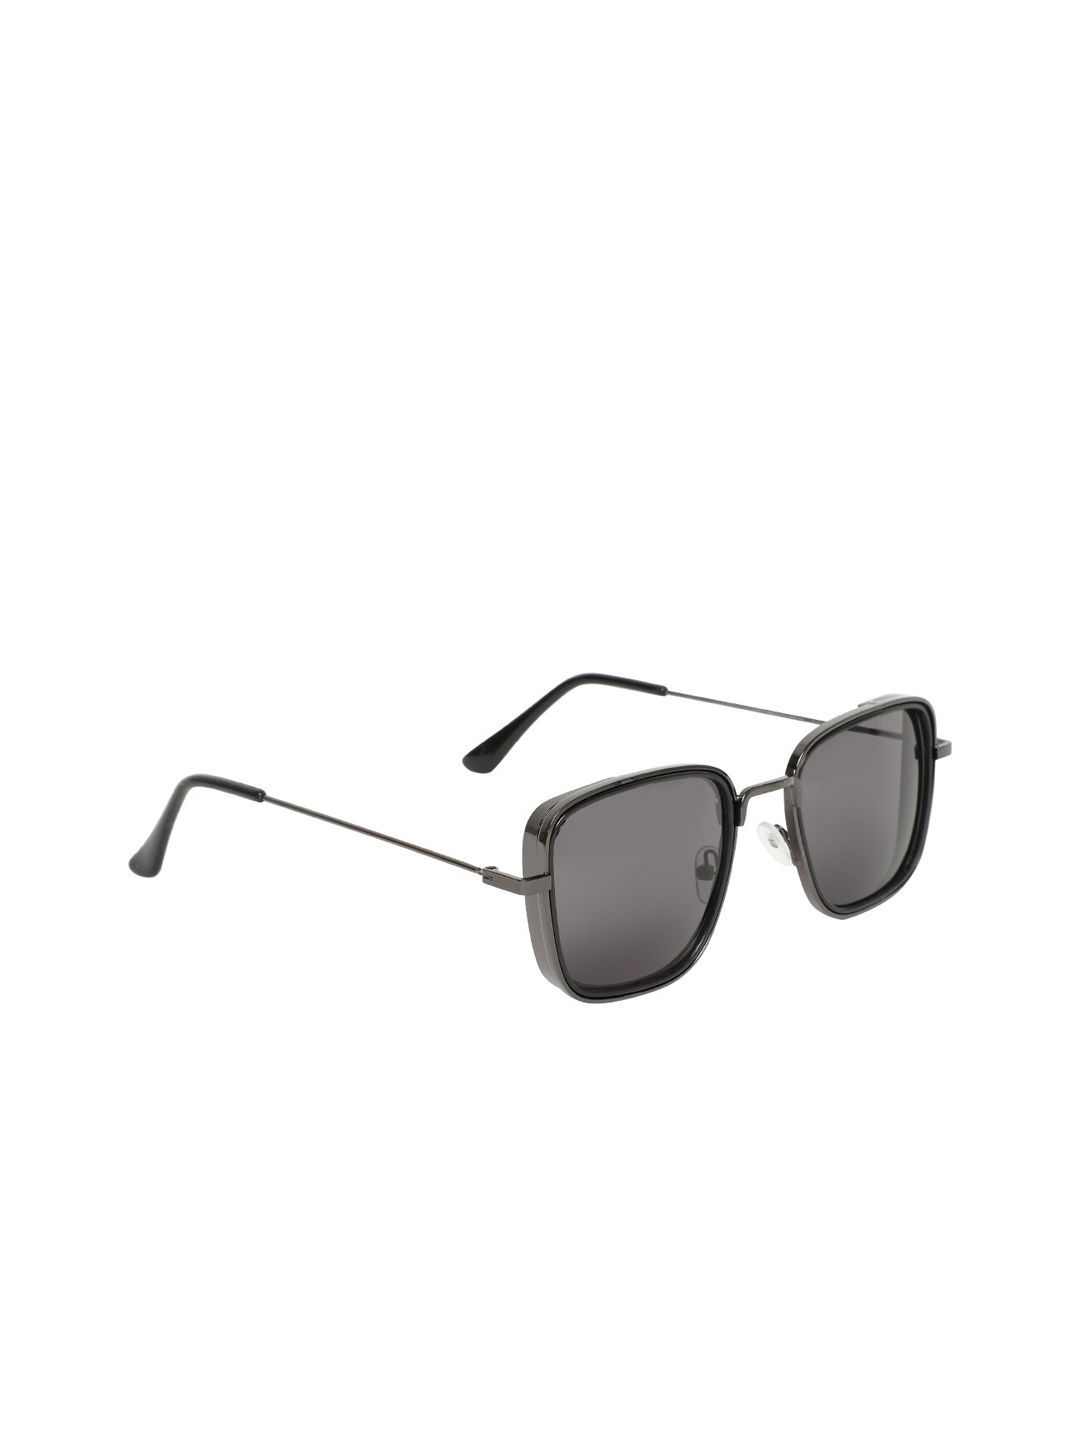 ALIGATORR Unisex UV Protected Lens Square Sunglasses ALI_KABIR-TIP-BLK001 Price in India